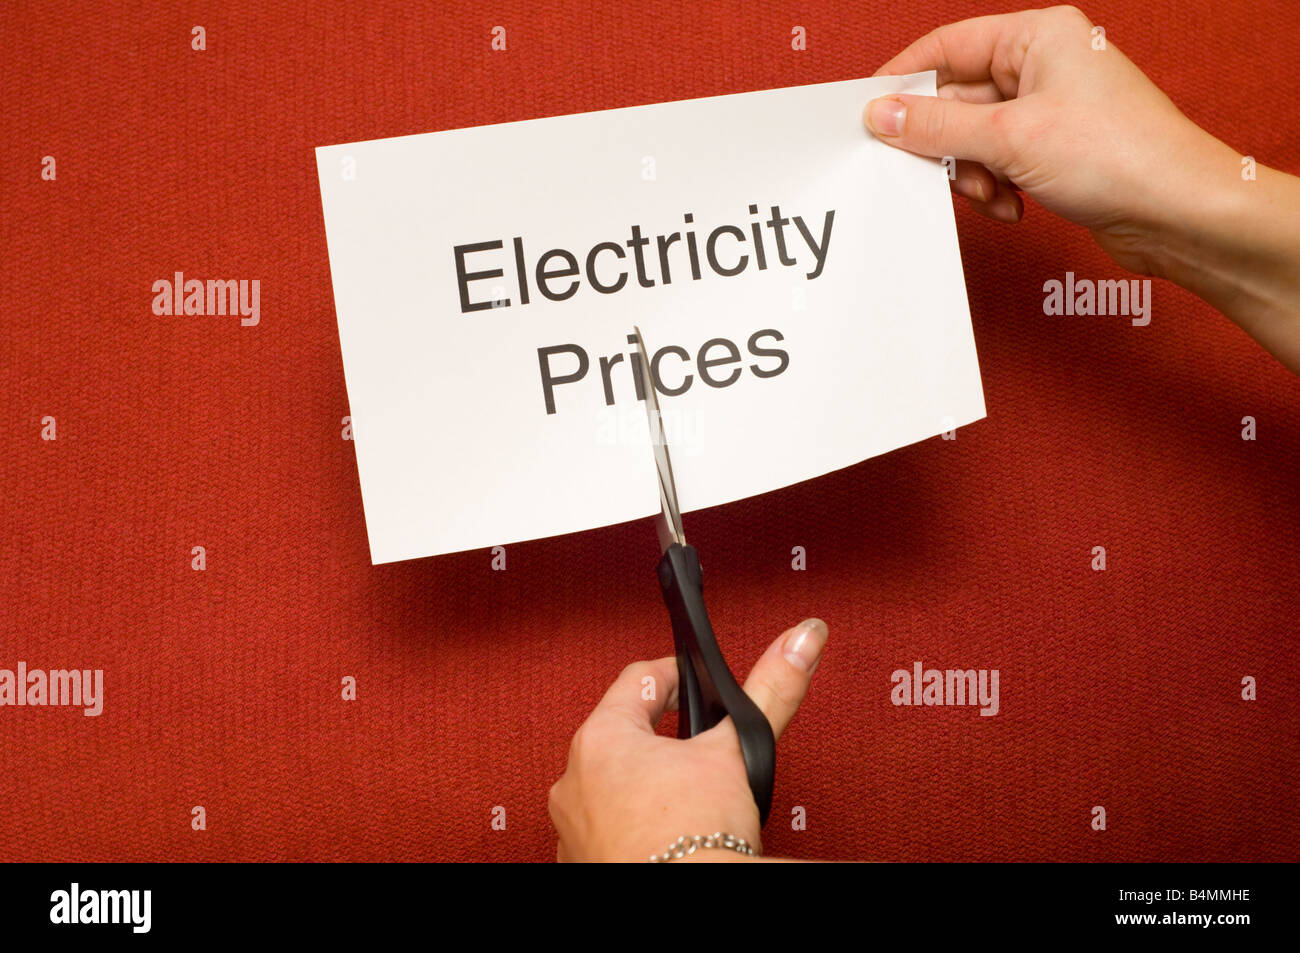 Immagine di persona il taglio di un pezzo di carta con "l'elettricità prezzi " scritto su di esso utilizzando un paio di forbici Foto Stock